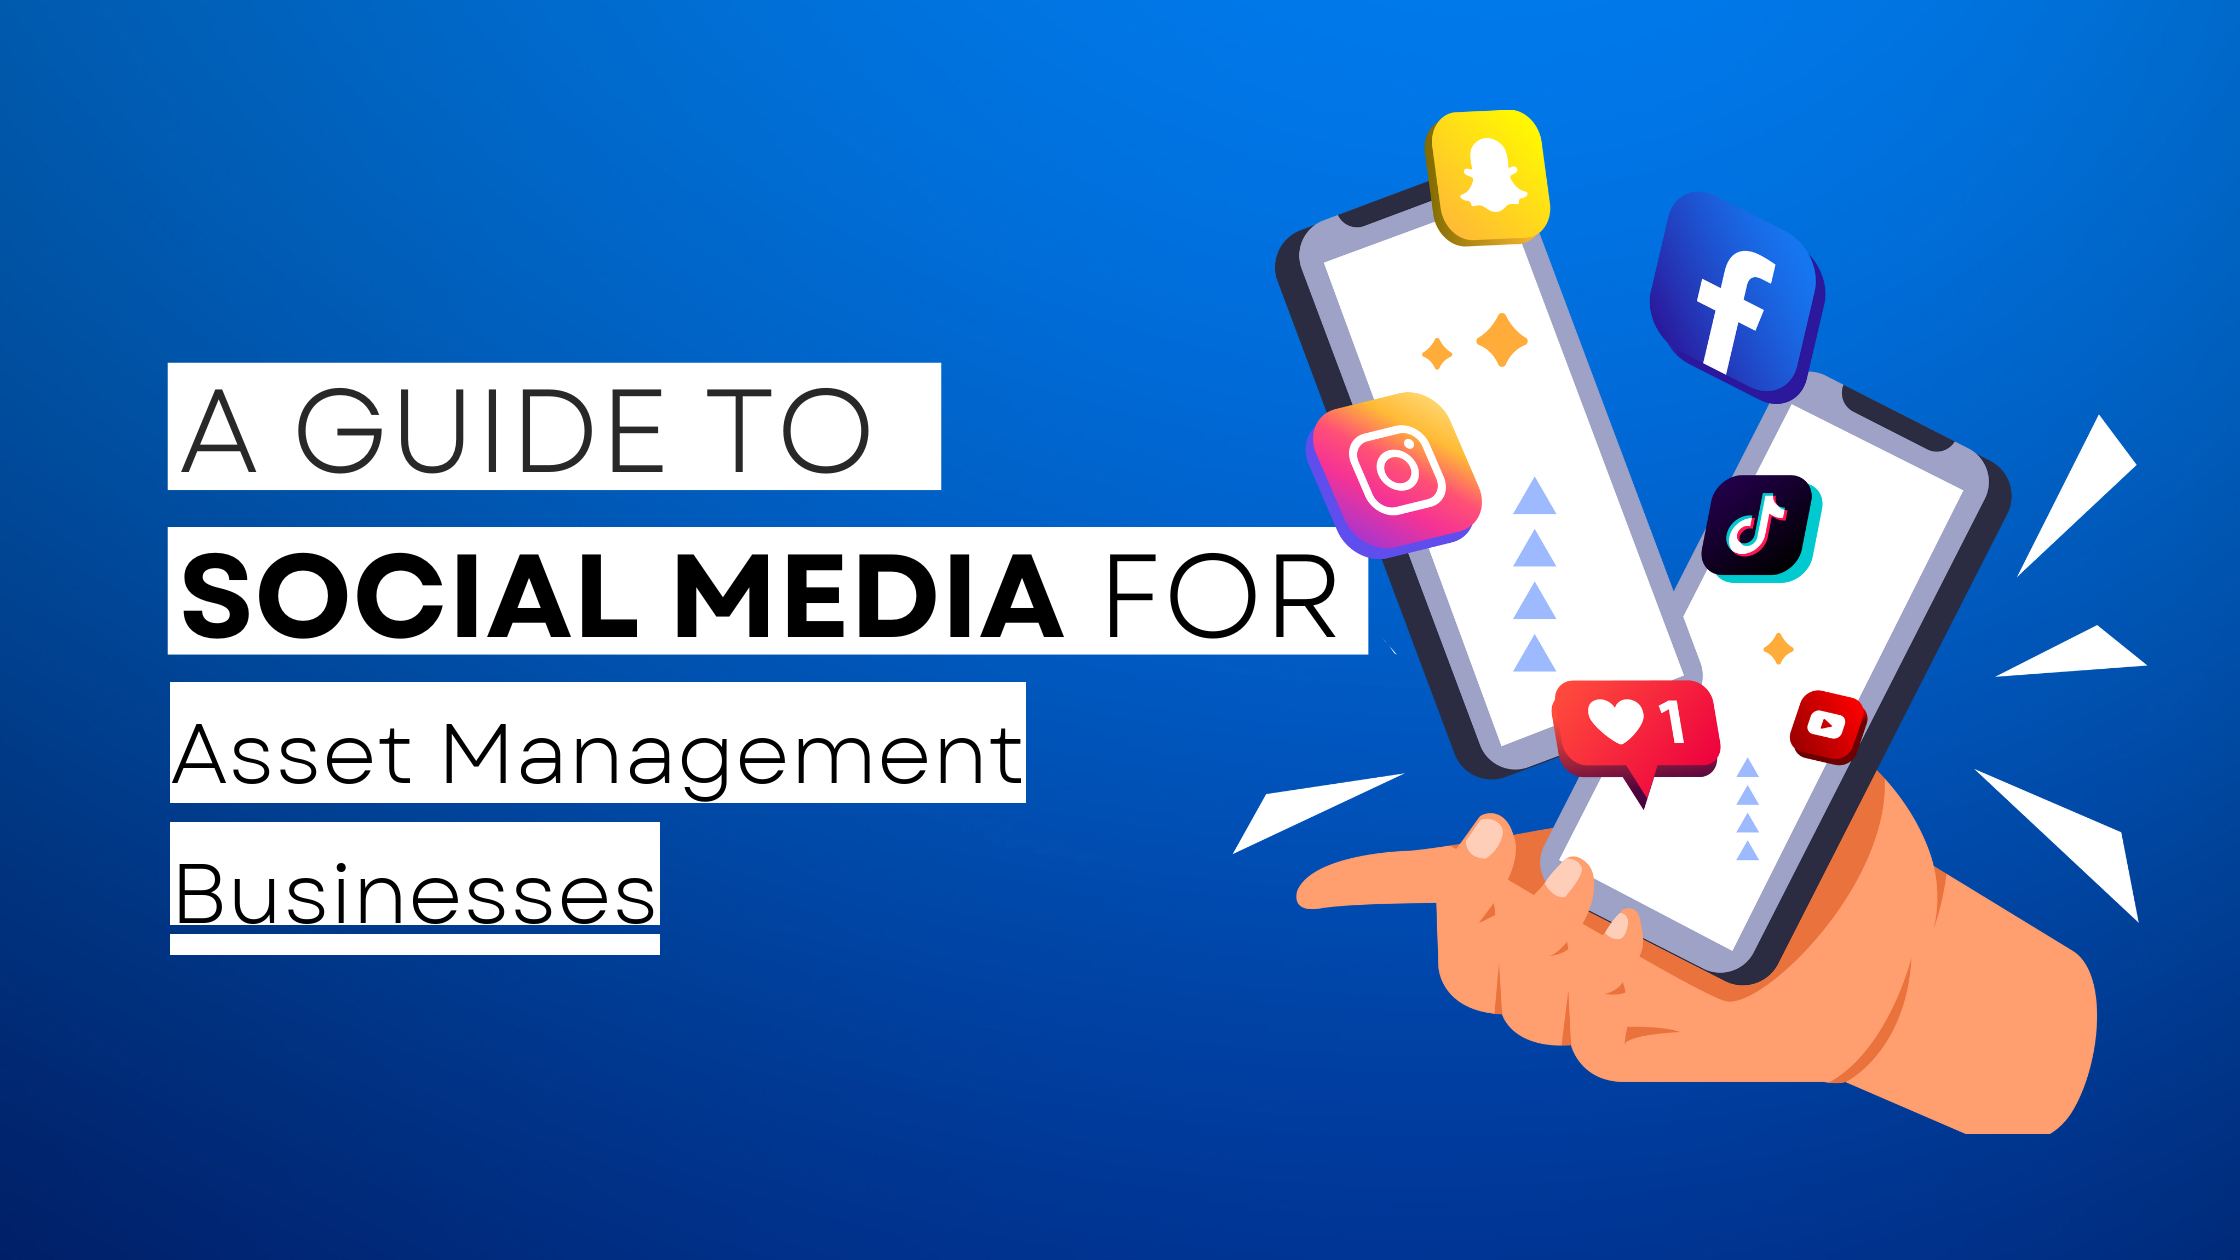 How to start Asset Management on social media